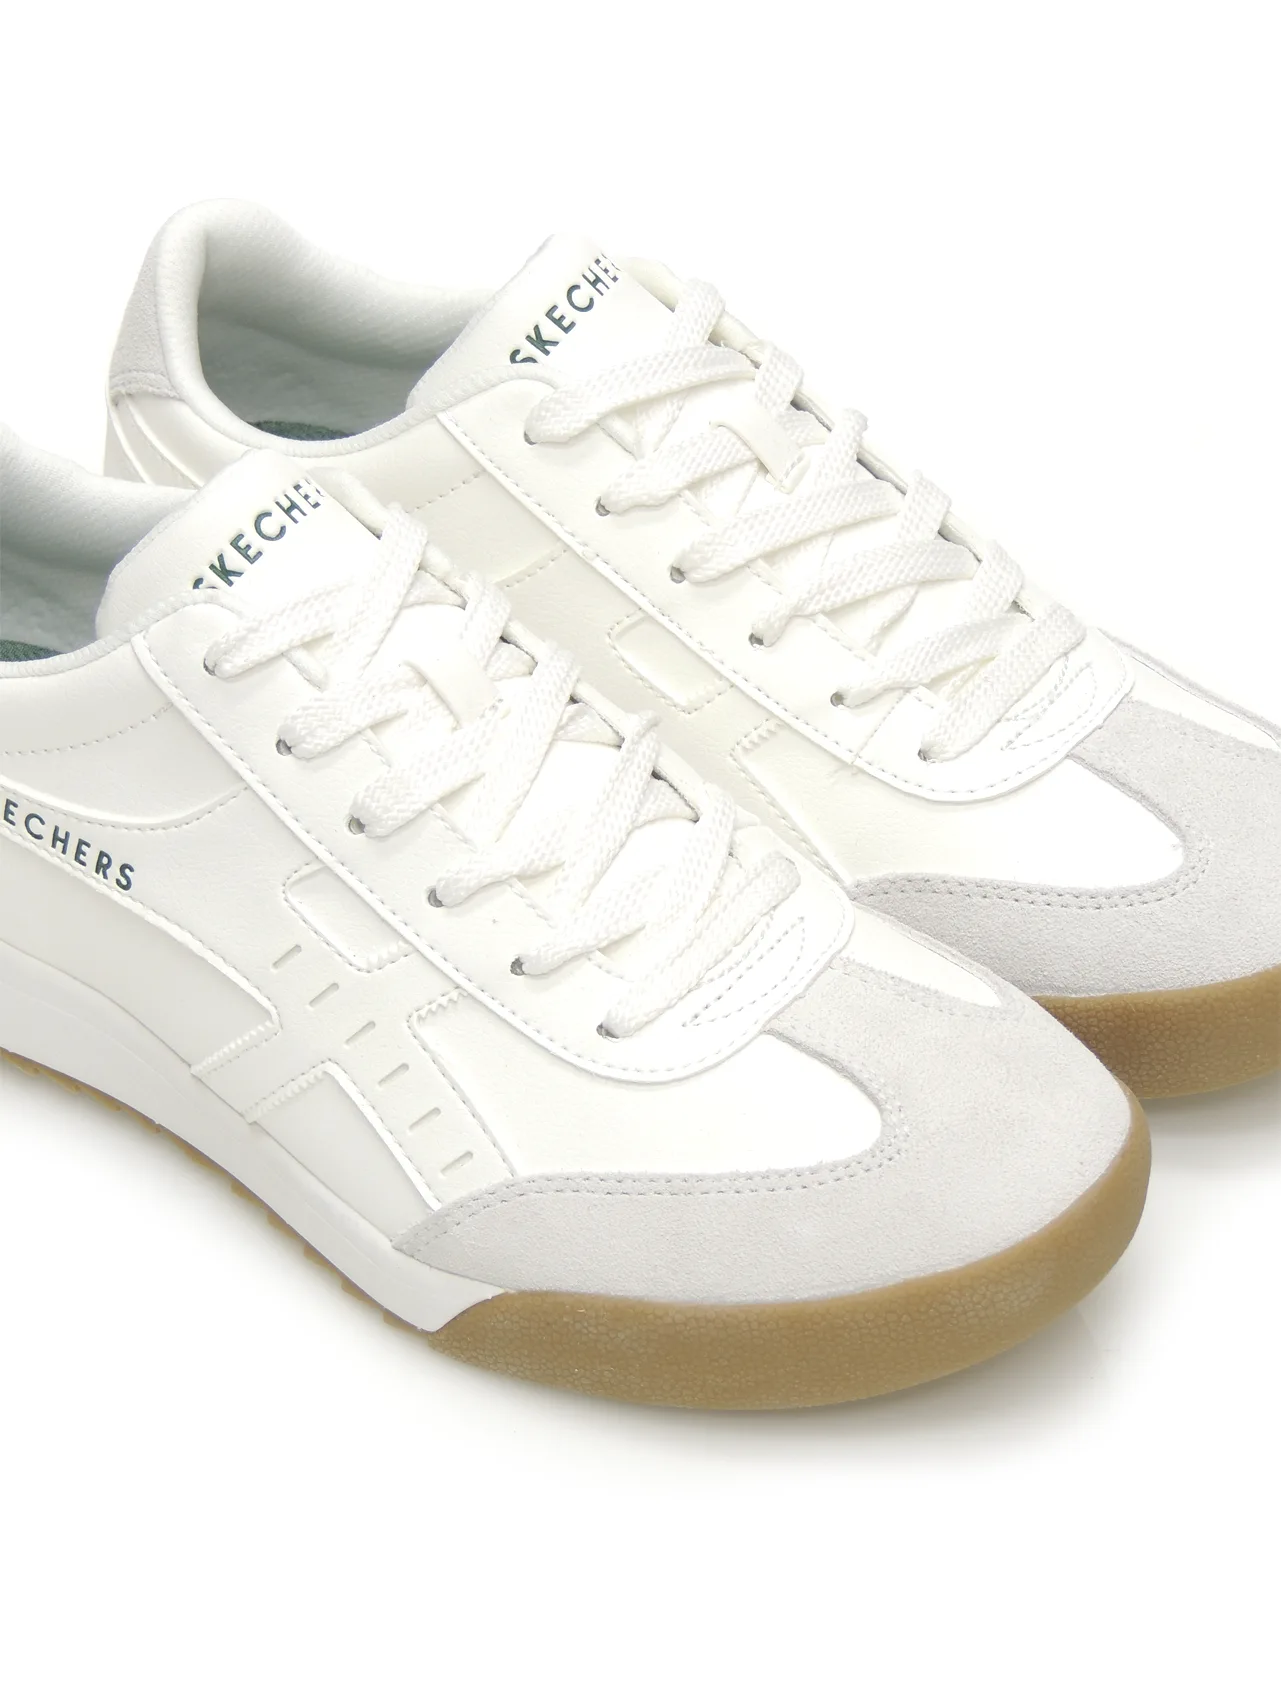 sneakers--skechers-183280-polipiel-blanco